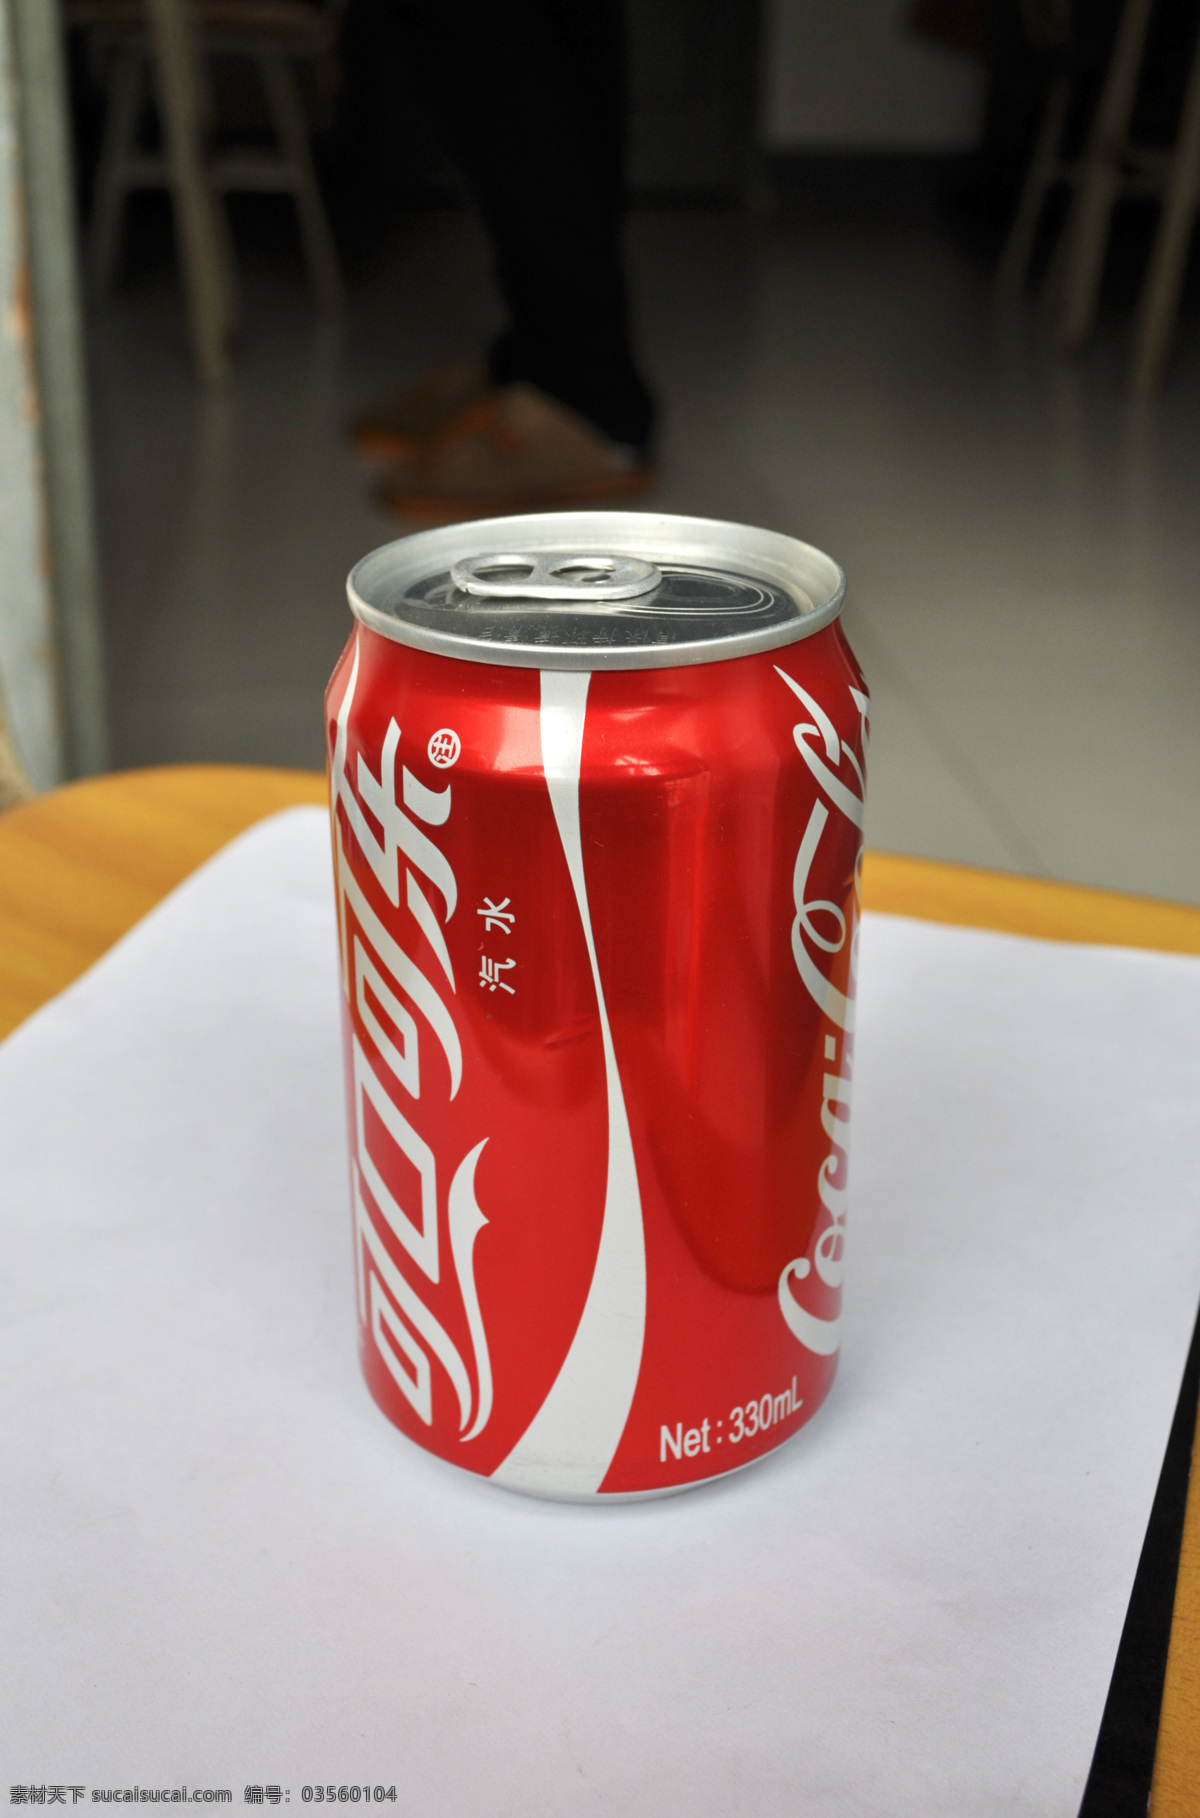 可口可乐 易拉罐 灌装可乐 可乐罐 饮料酒水 餐饮美食